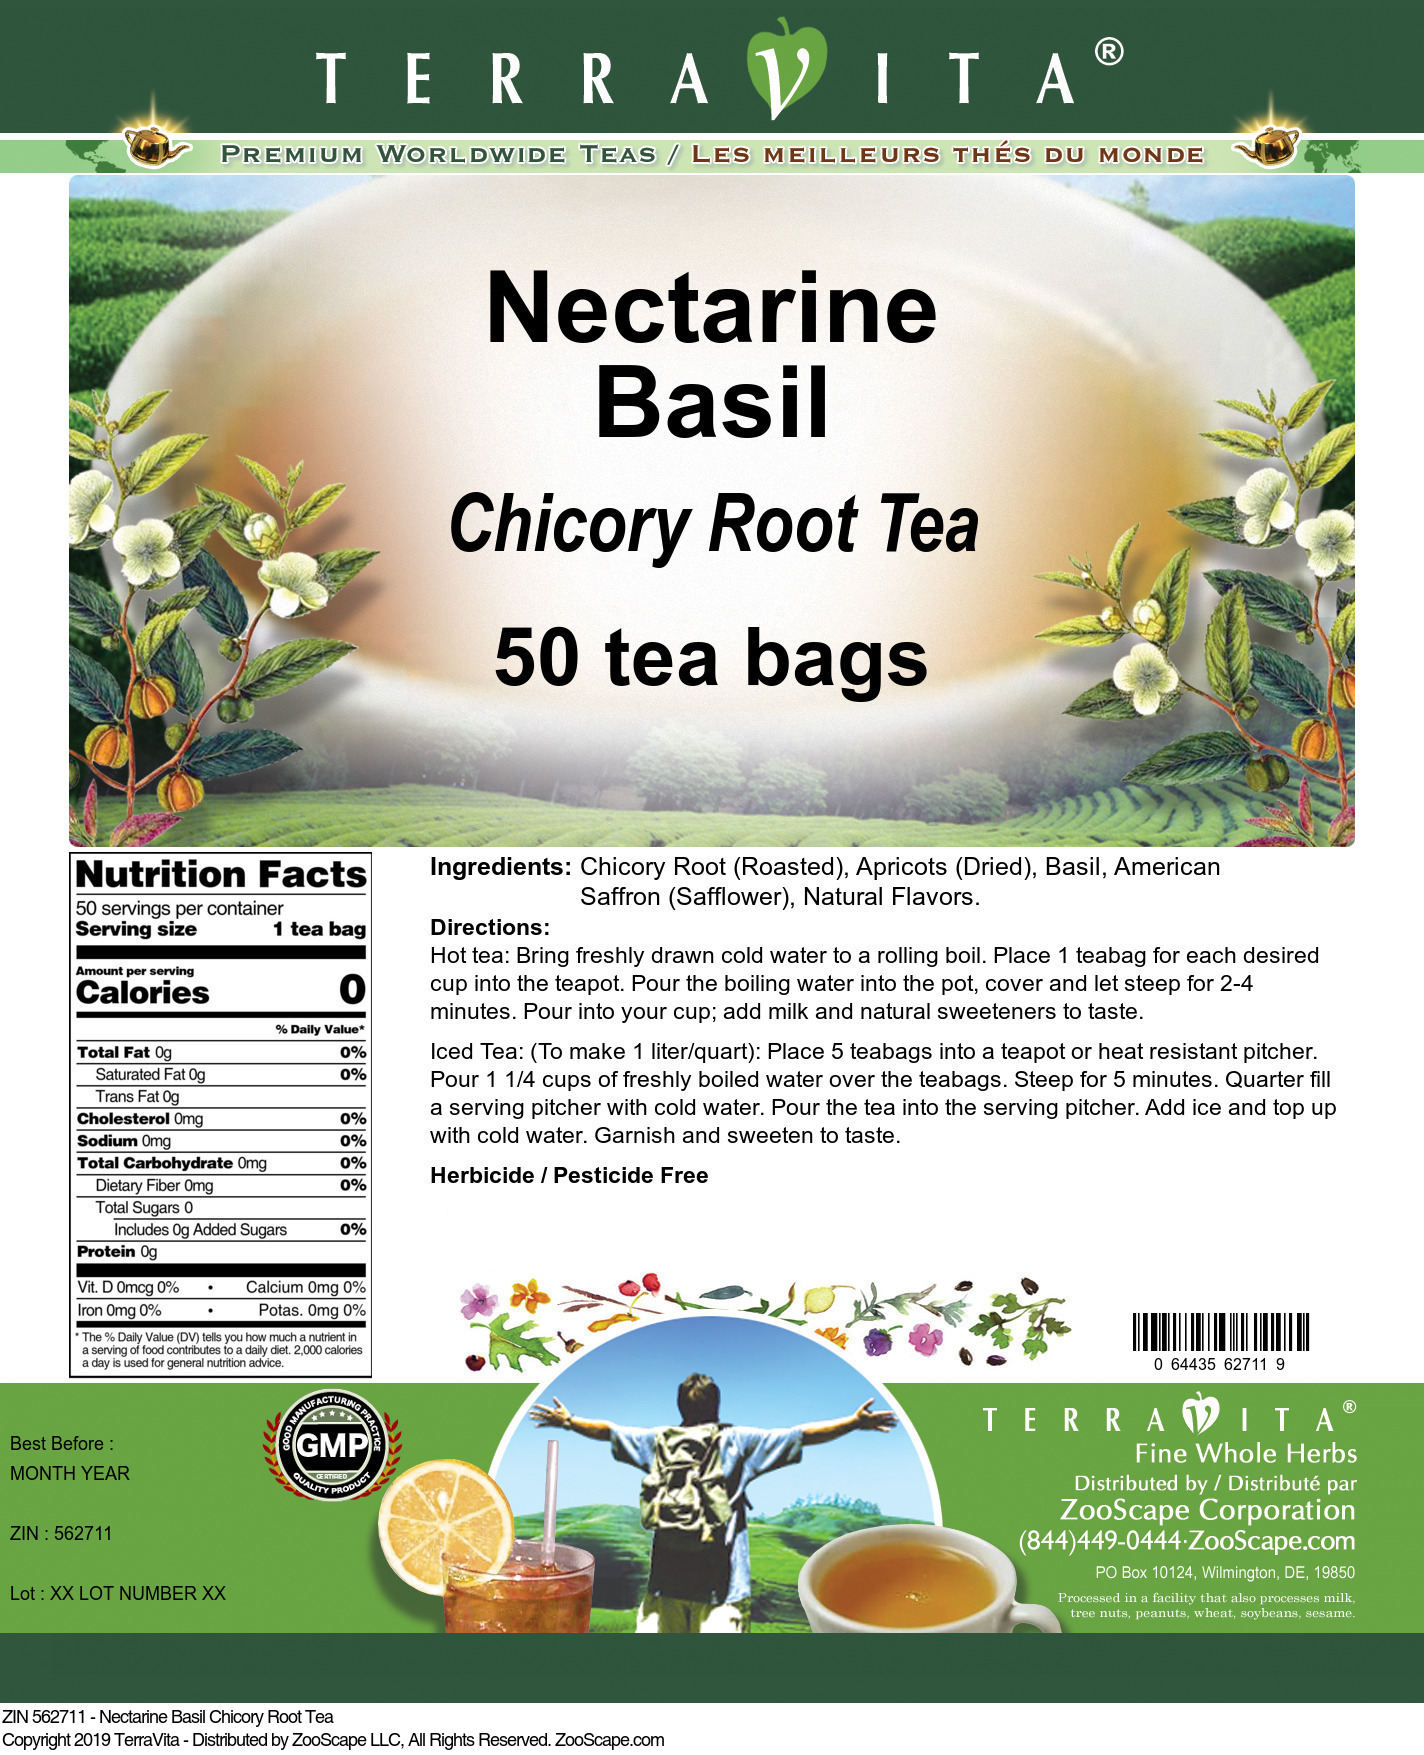 Nectarine Basil Chicory Root Tea - Label